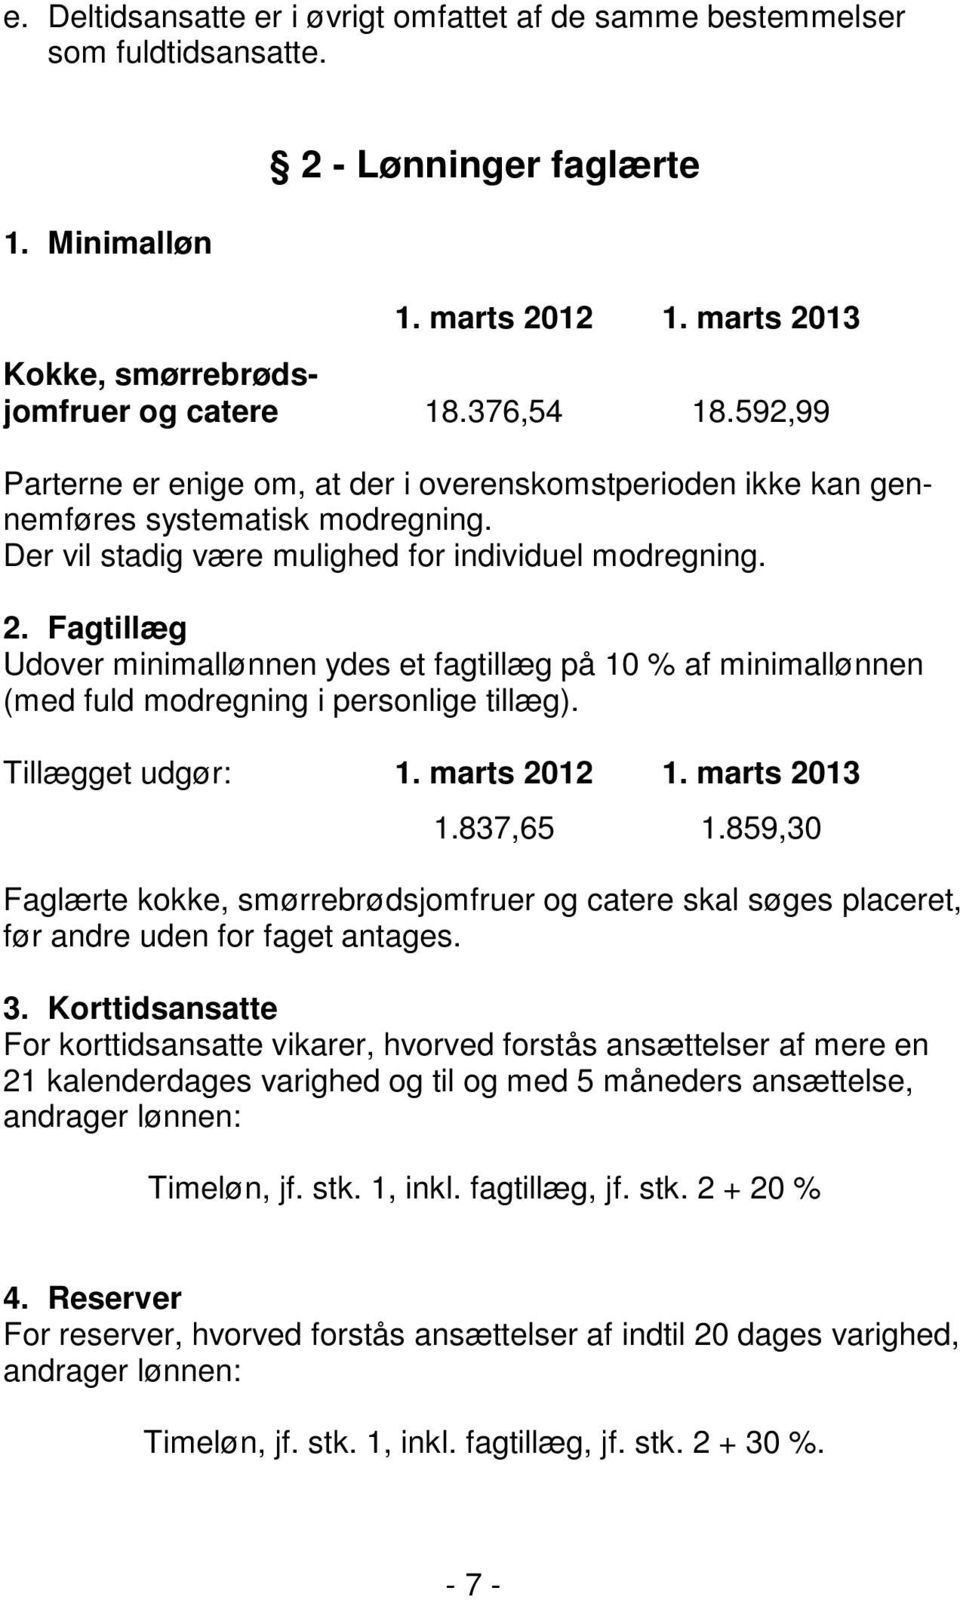 Fagtillæg Udover minimallønnen ydes et fagtillæg på 10 % af minimallønnen (med fuld modregning i personlige tillæg). Tillægget udgør: 1. marts 2012 1. marts 2013 1.837,65 1.